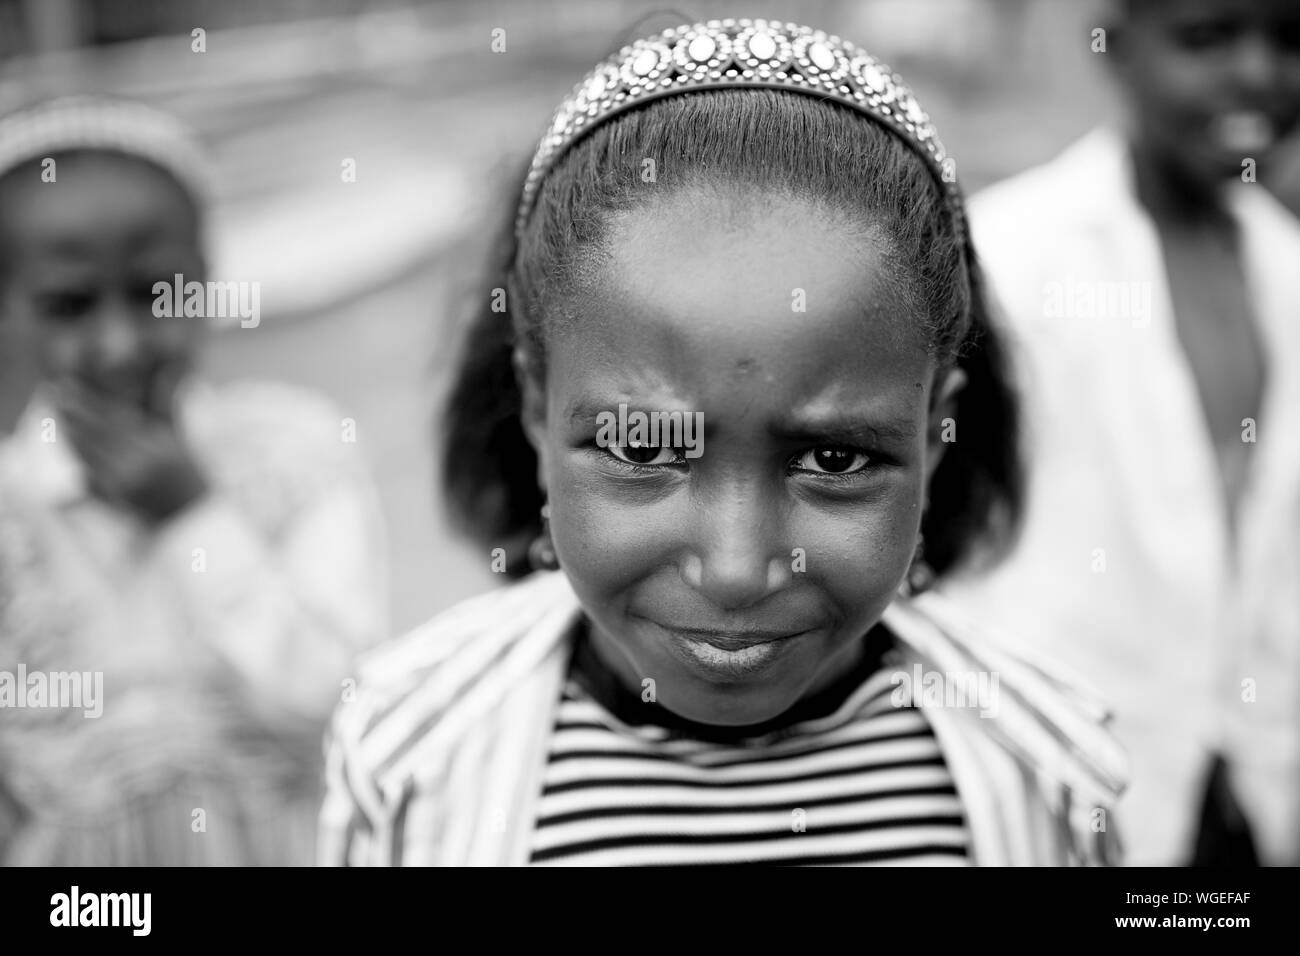 OROMIA, ETHIOPIA-APRIL 20, 2015: Closeup portrait of an unidentified child in the Oromia region of Ethiopia Stock Photo